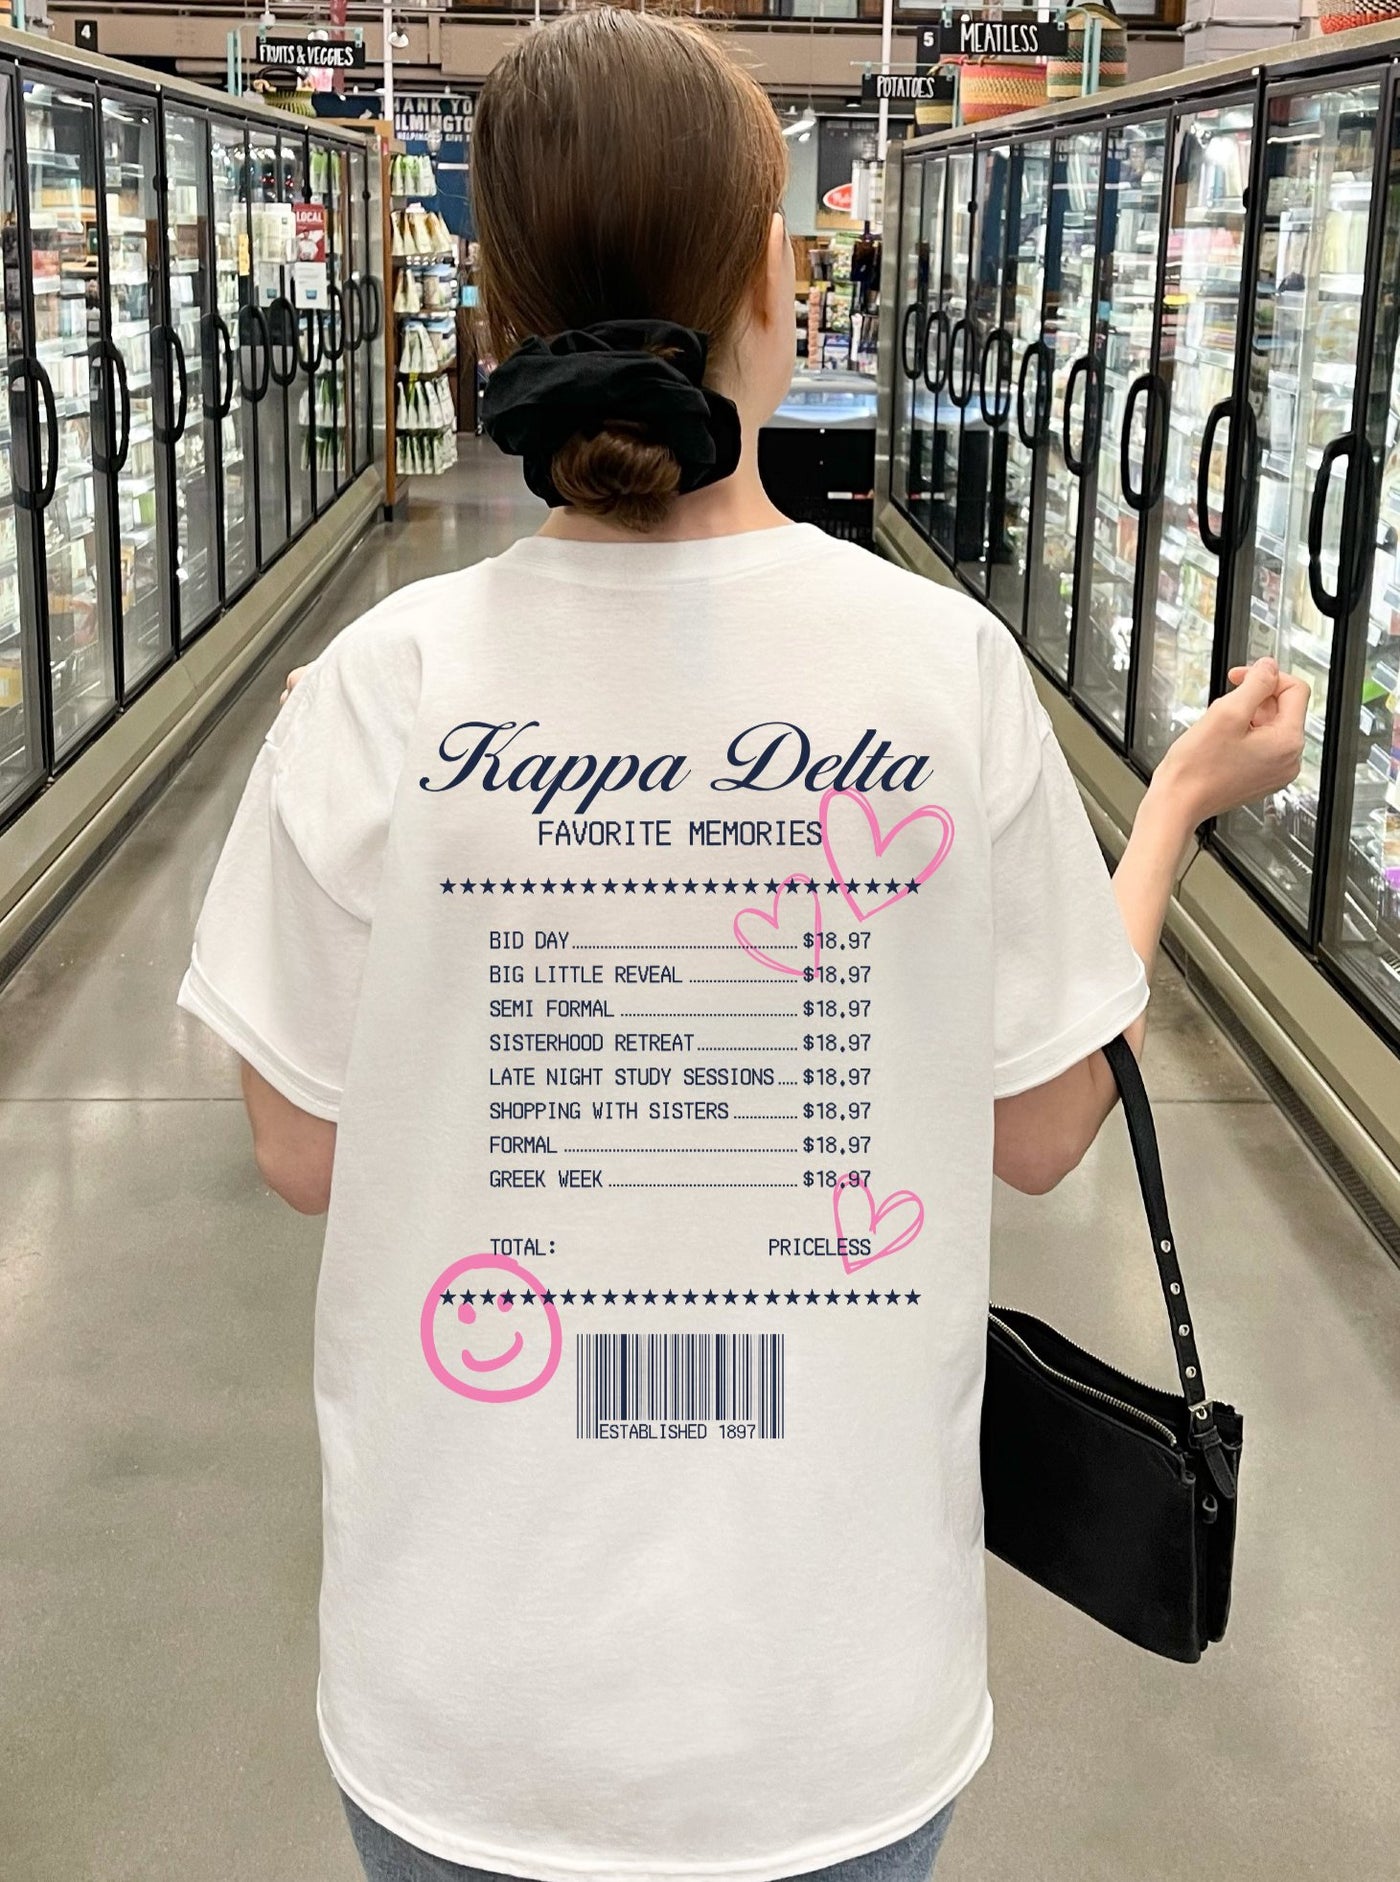 Kappa Delta Sorority Receipt Comfy T-shirt